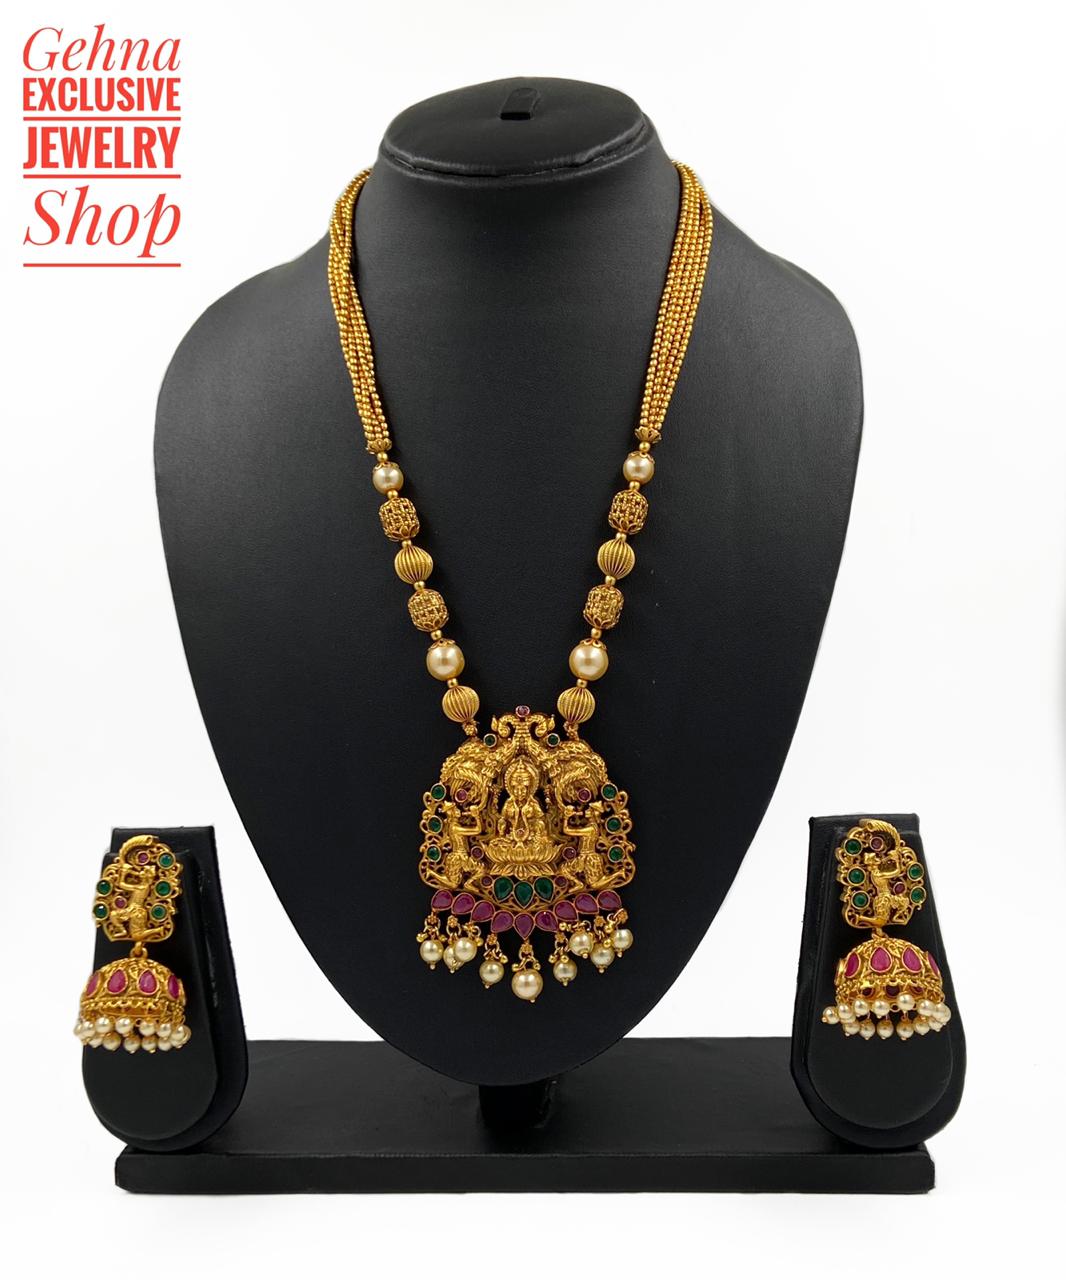 Designer Goddess Lakshmi Necklace Set By Gehna Shop Temple Necklace Sets